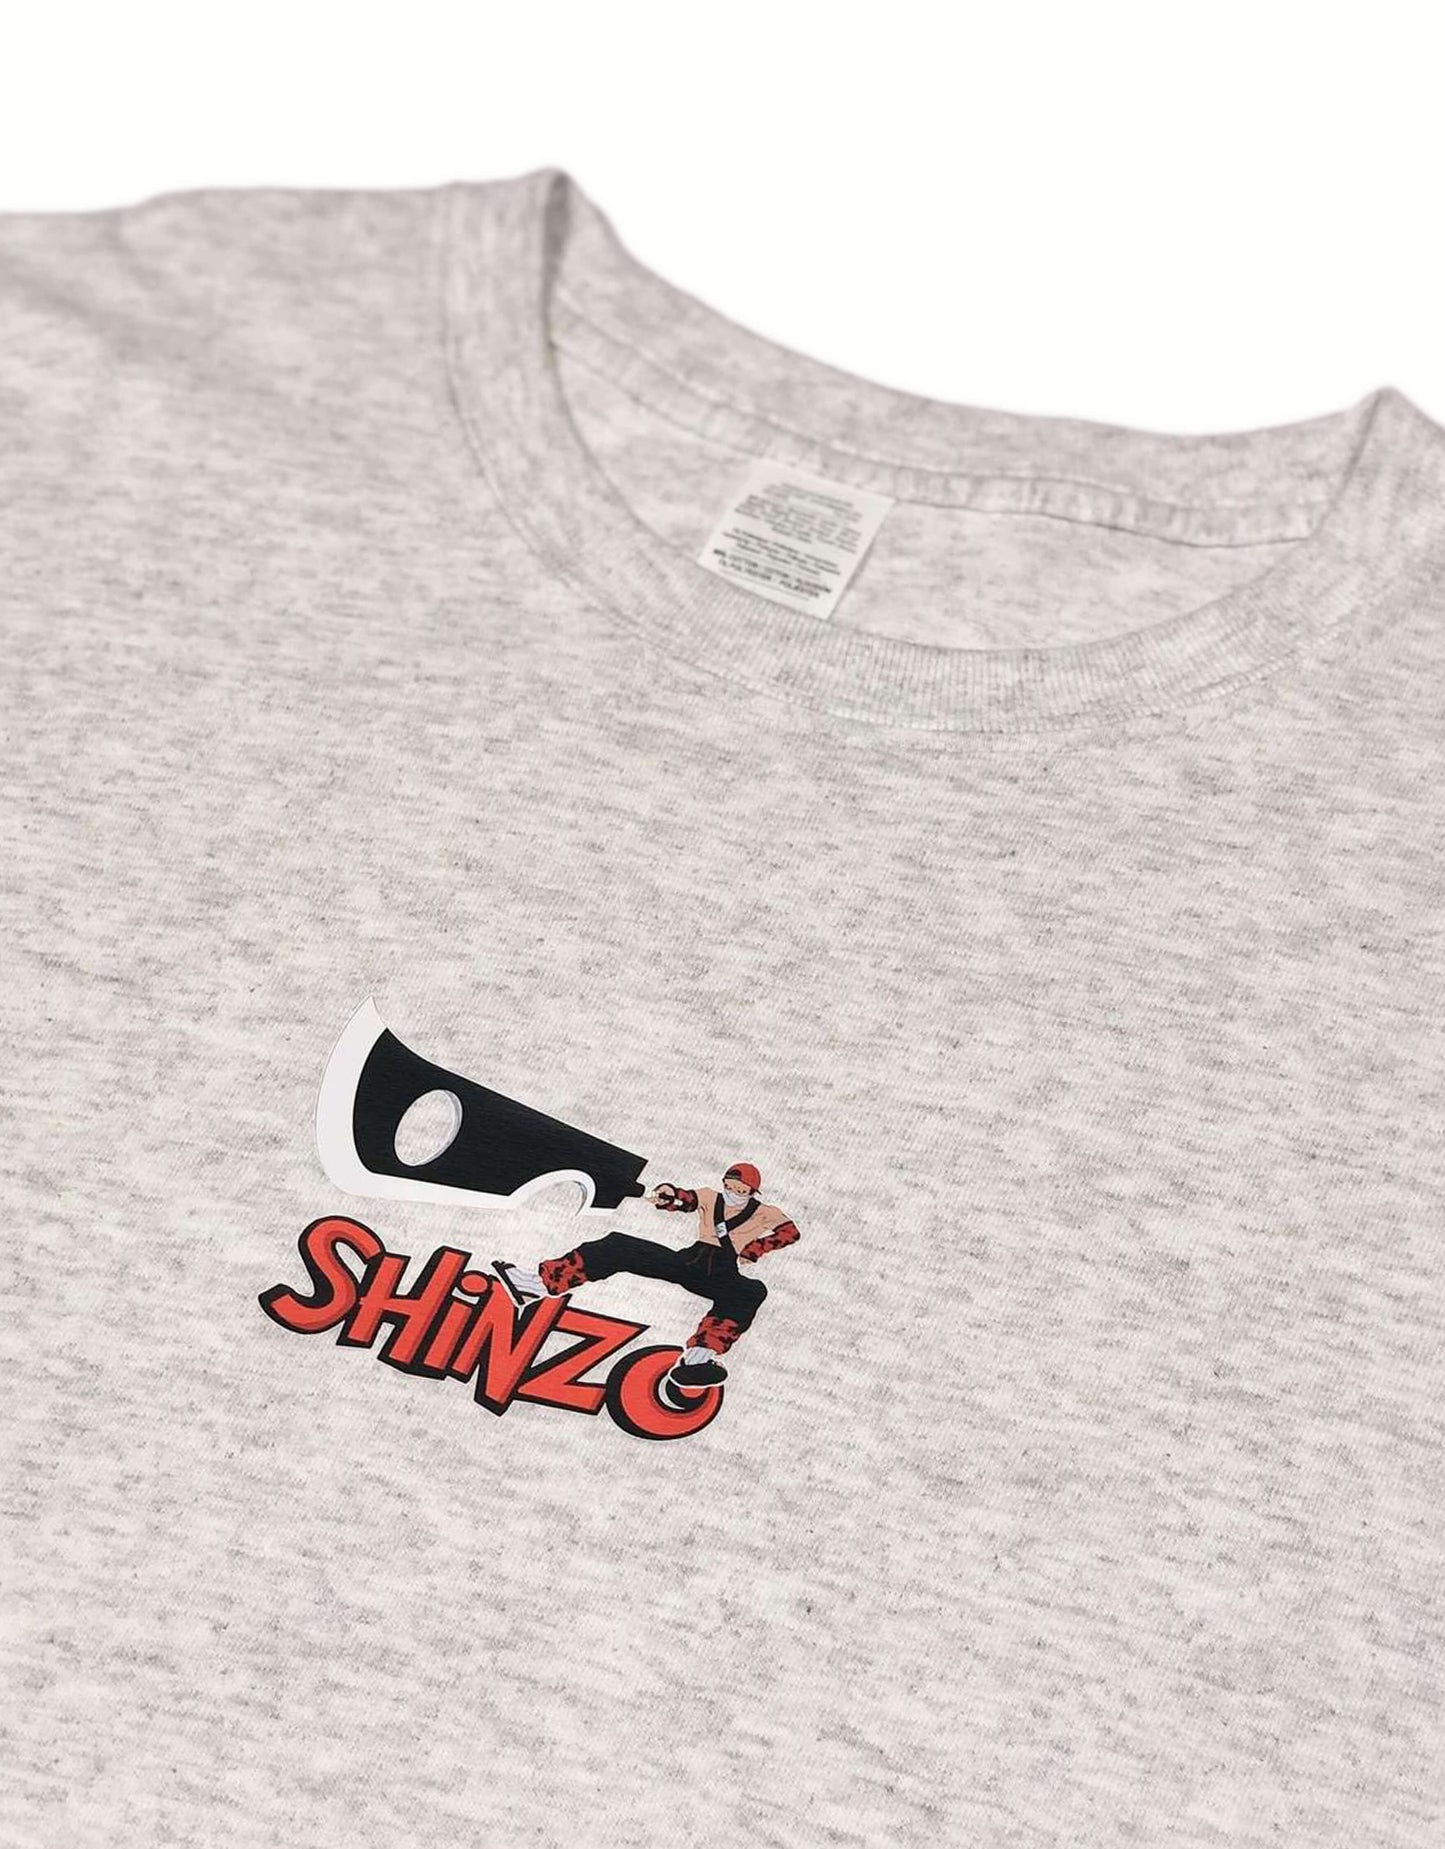 Shinkaza T-Shirt Snow Marle